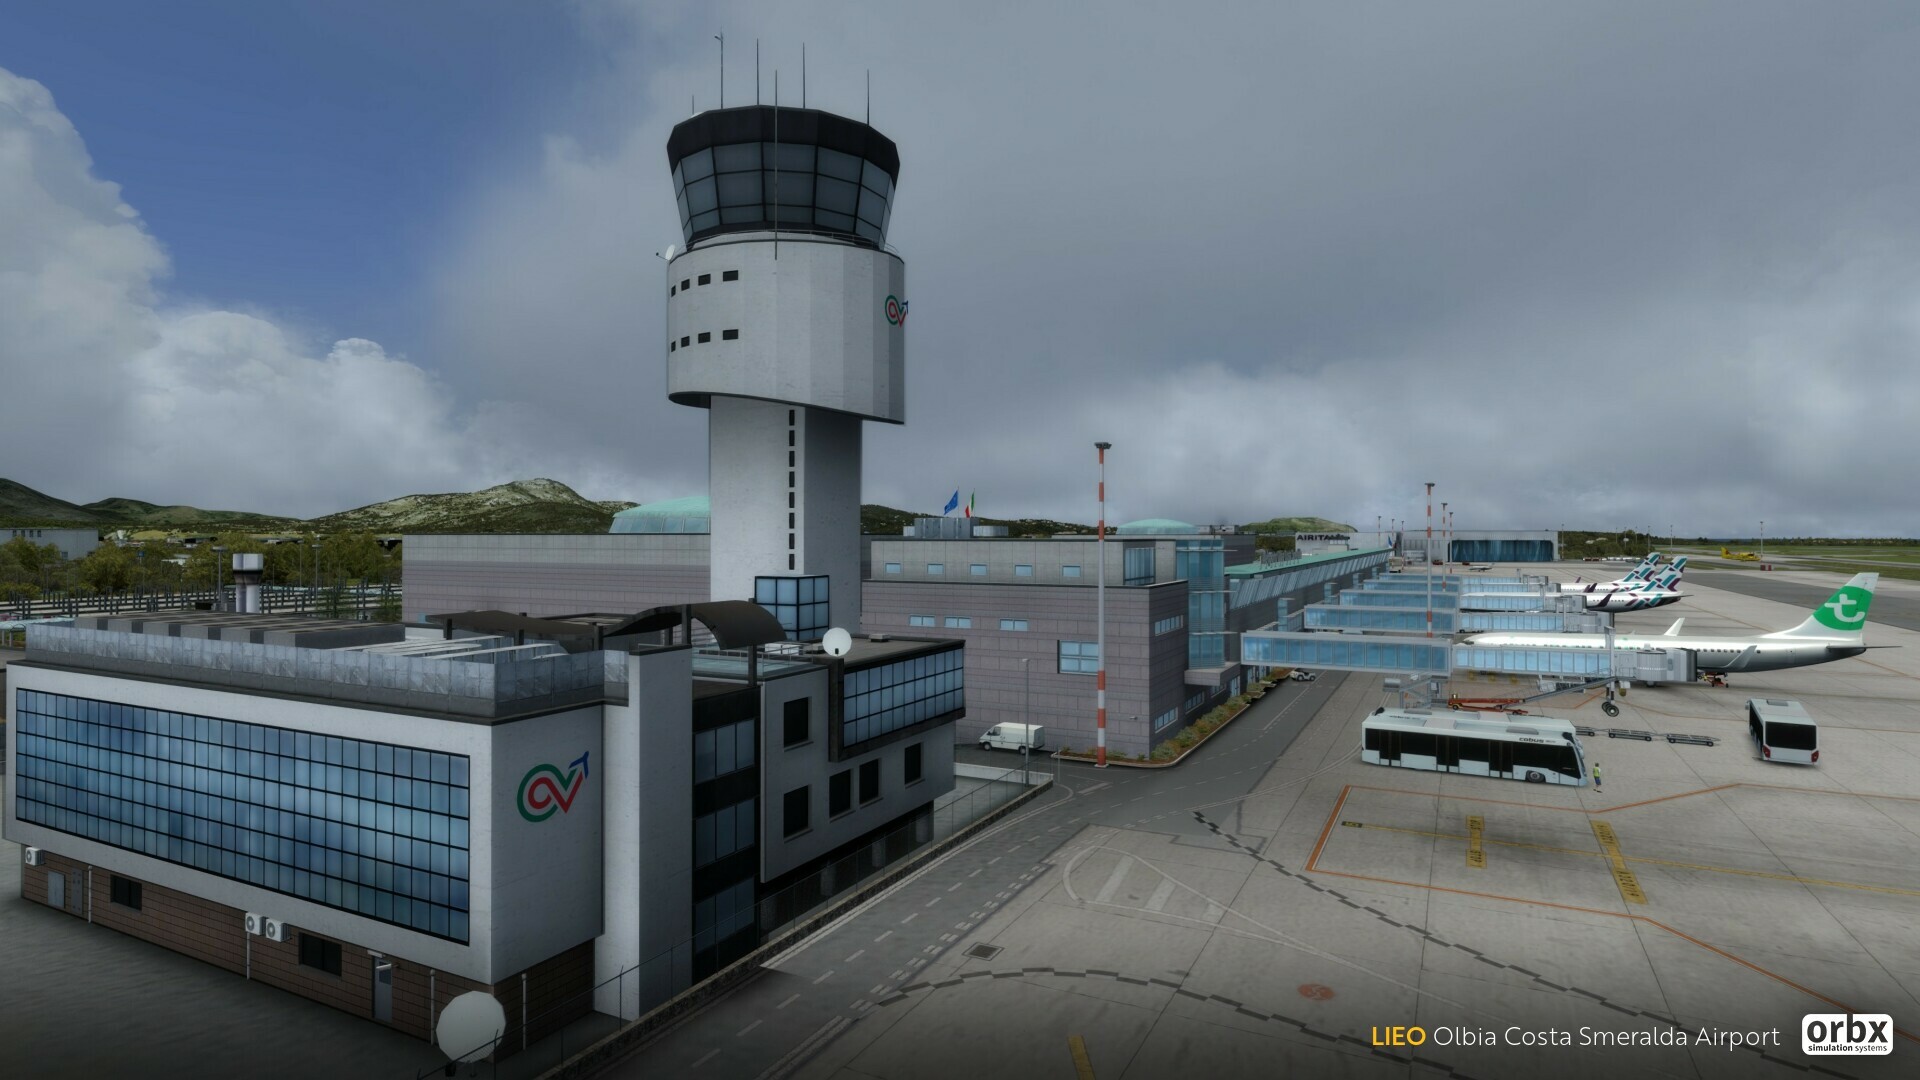 L'aéroport d'Olbia Costa Smeralda d'Orbx disponible!